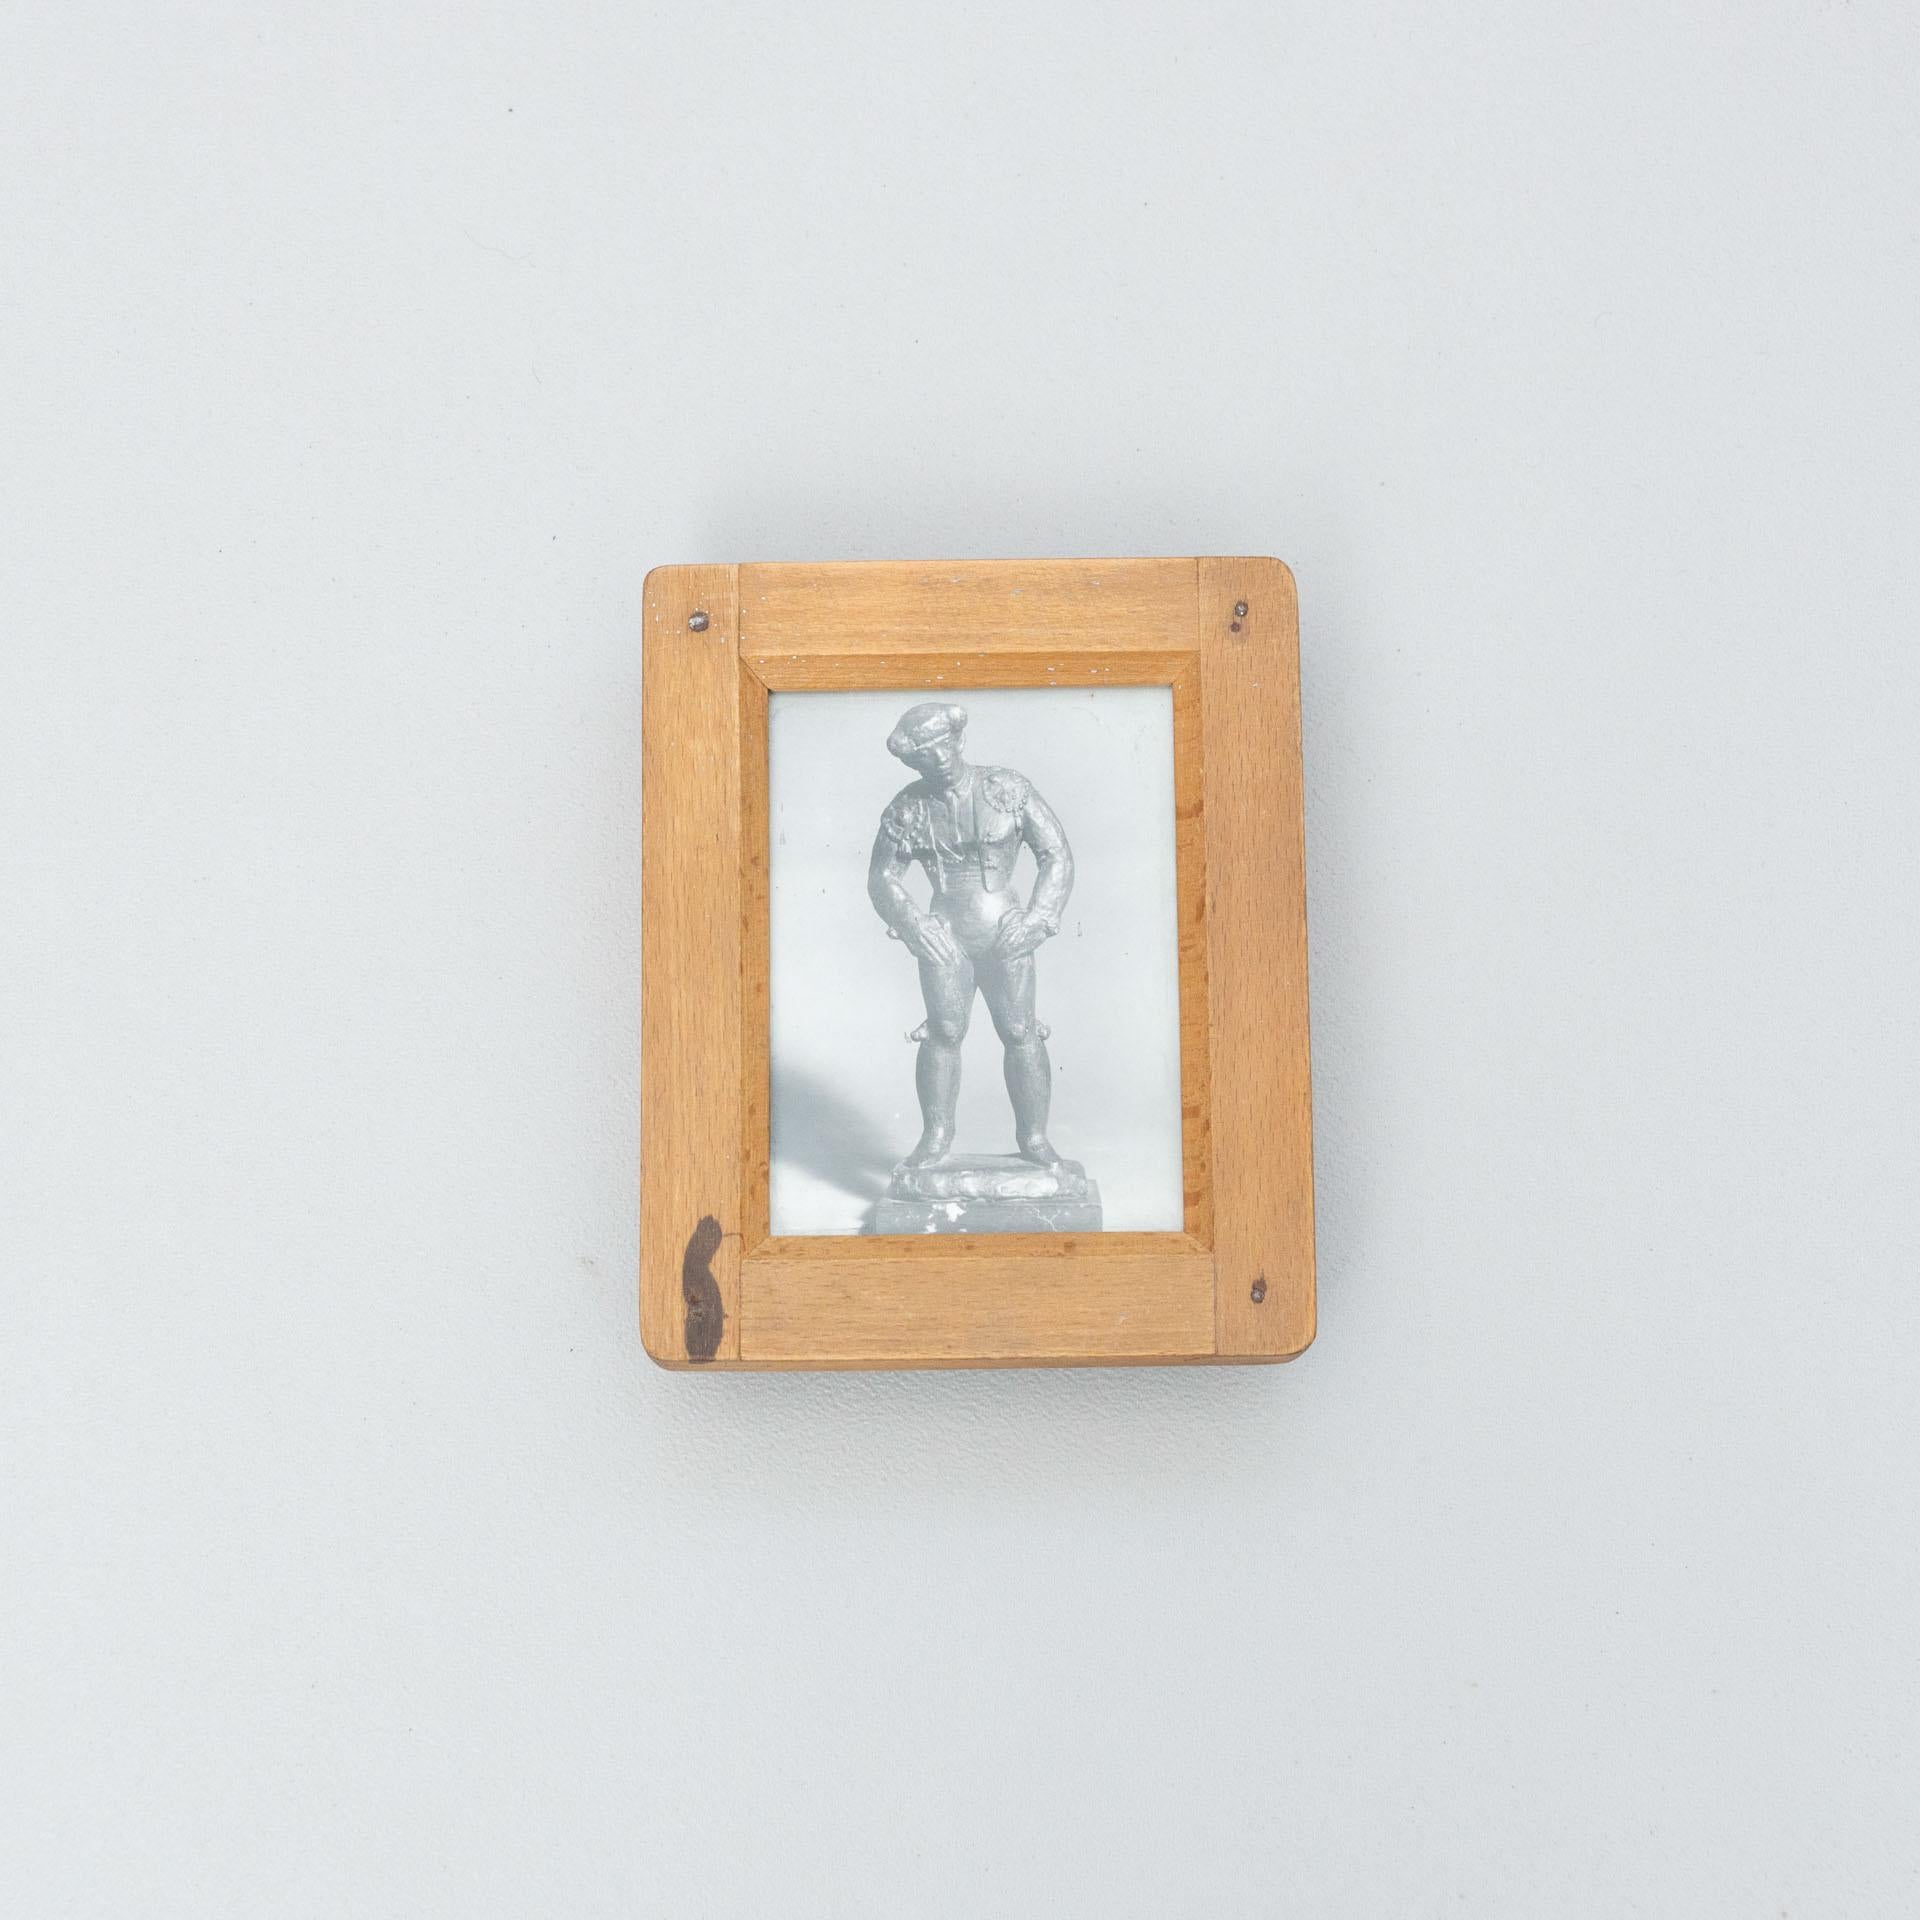 Photographies d'archives de sculptures de Manolo Hugué.
Imprimé, vers 1960.
Cadre en bois inclus.


Matériaux :
Tirage au gélatino-bromure d'argent

Dimensions :
D 4 cm x L 13,5 cm x H 16,5 cm

